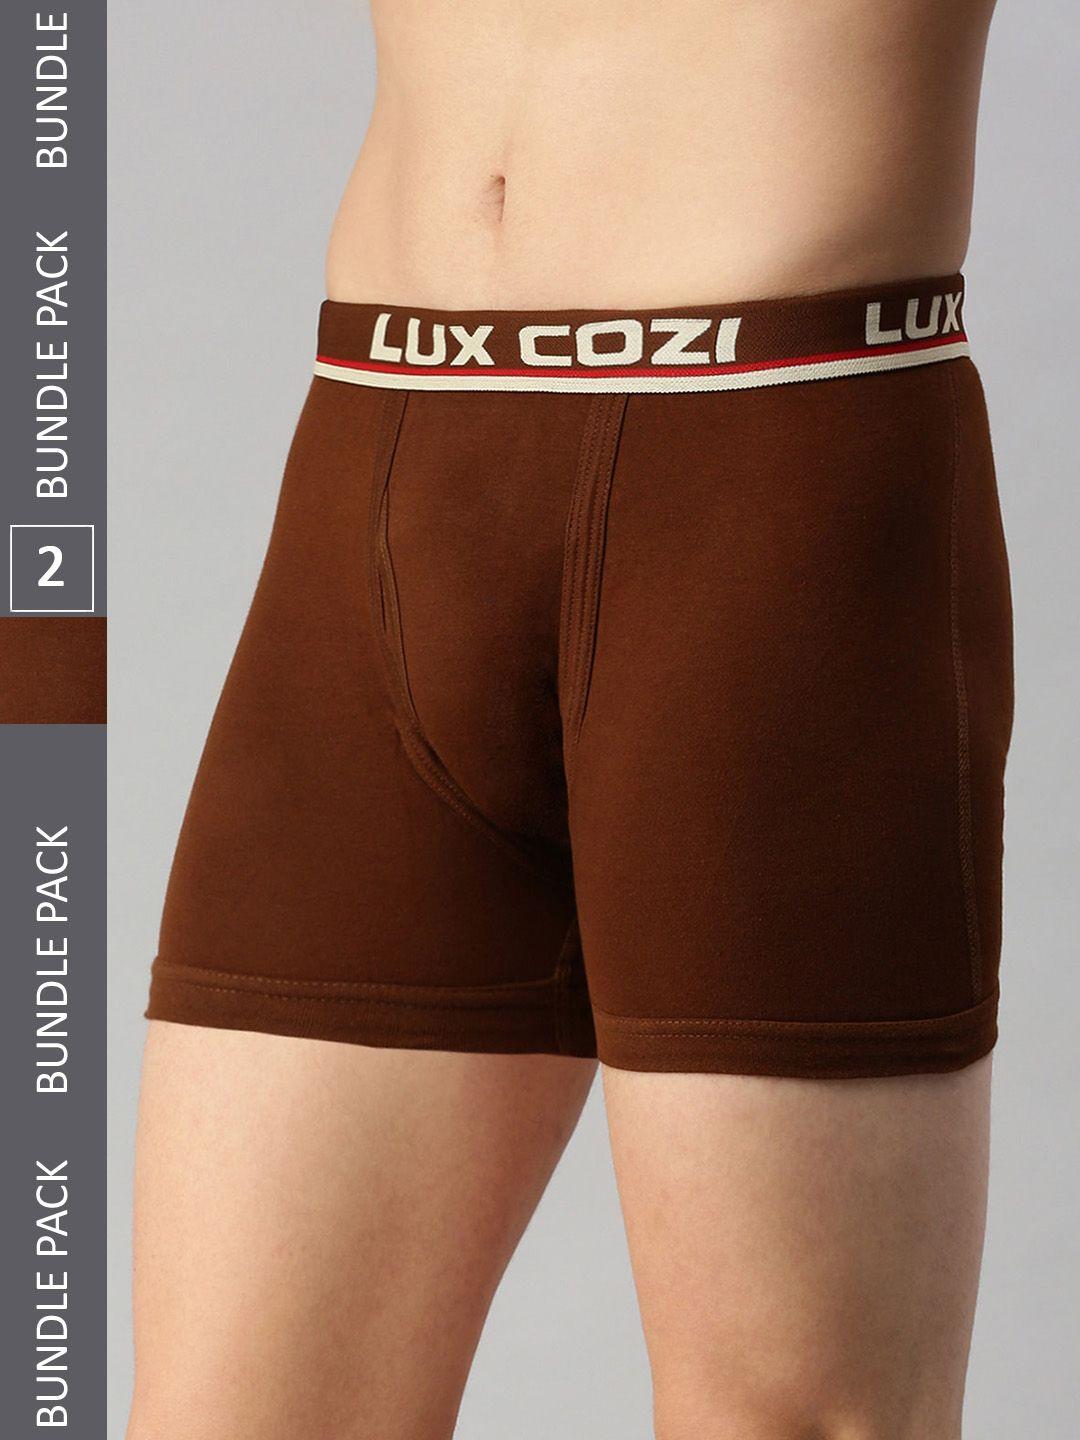 lux cozi pack of 2 trunks cozi_intlock_mst_2pc